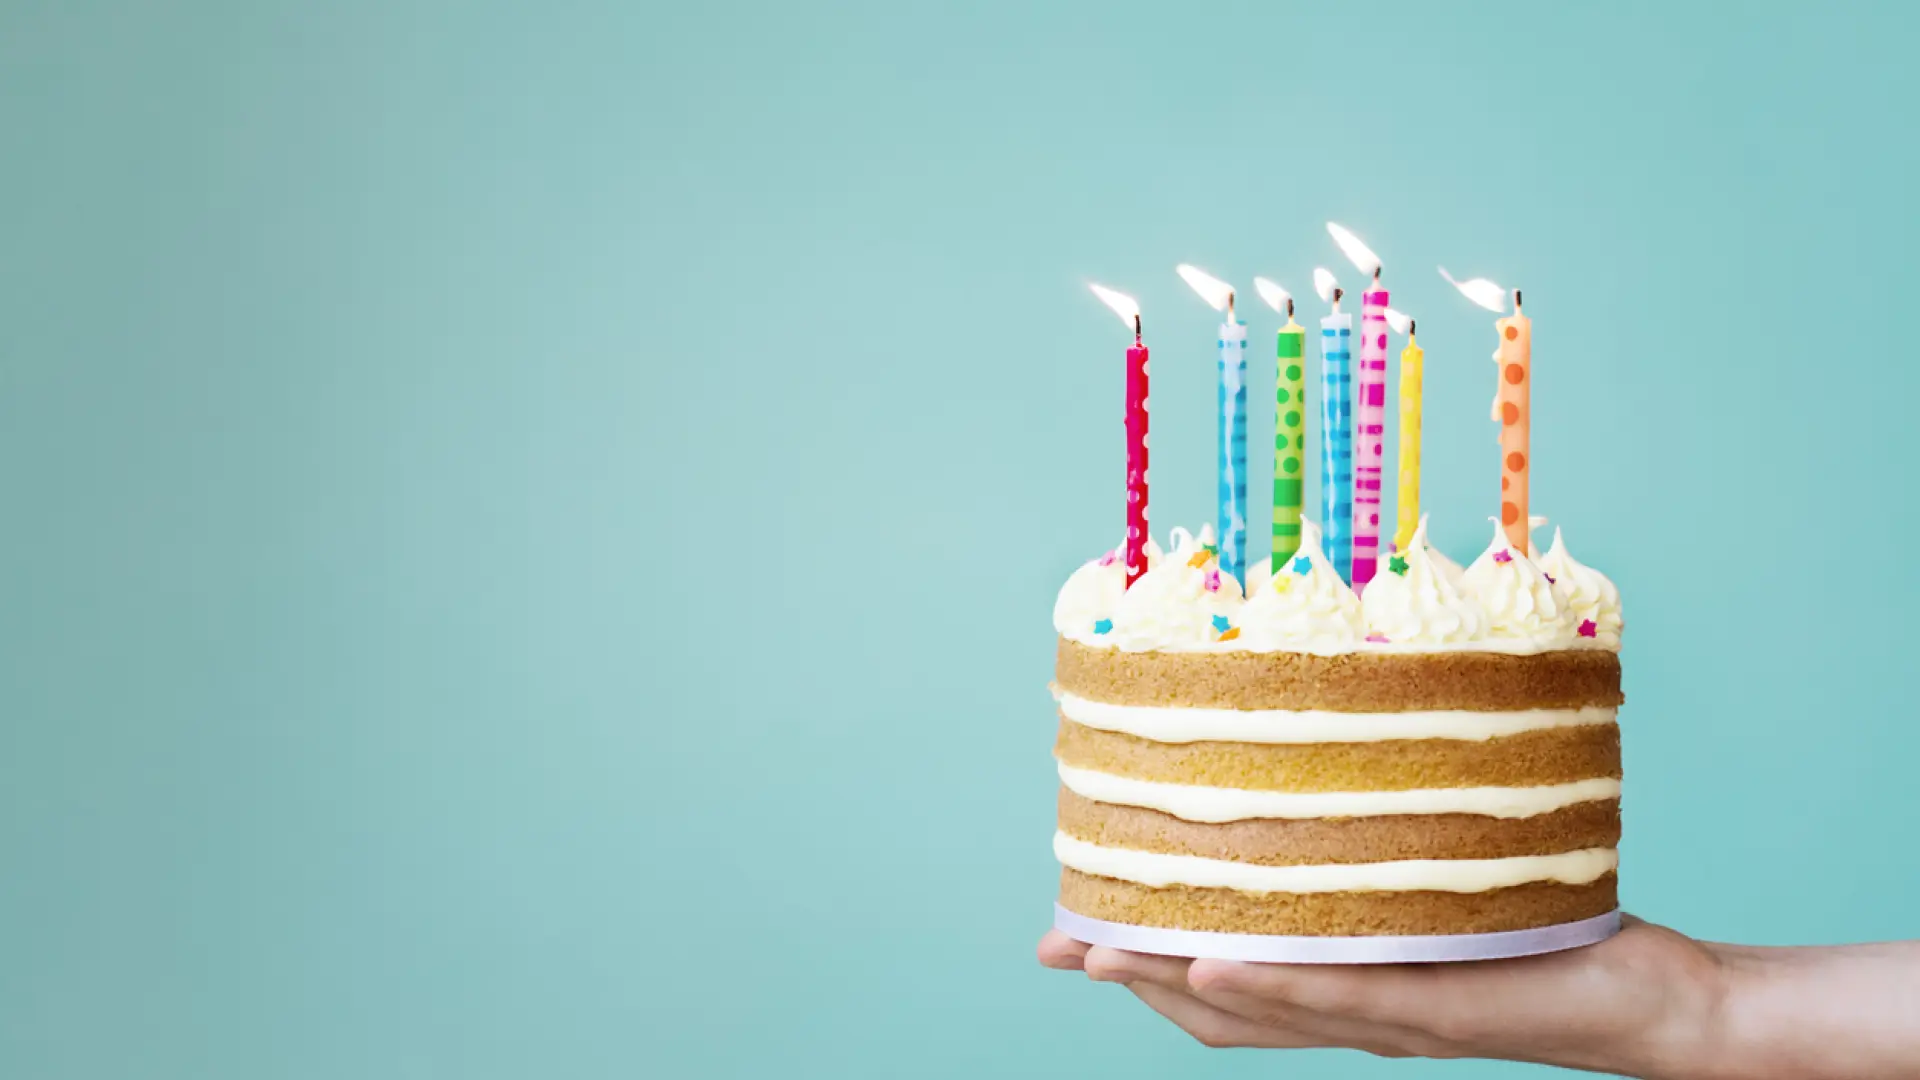 10 Frases Especiales para Felicitar a tu Amiga en su Cumpleaños